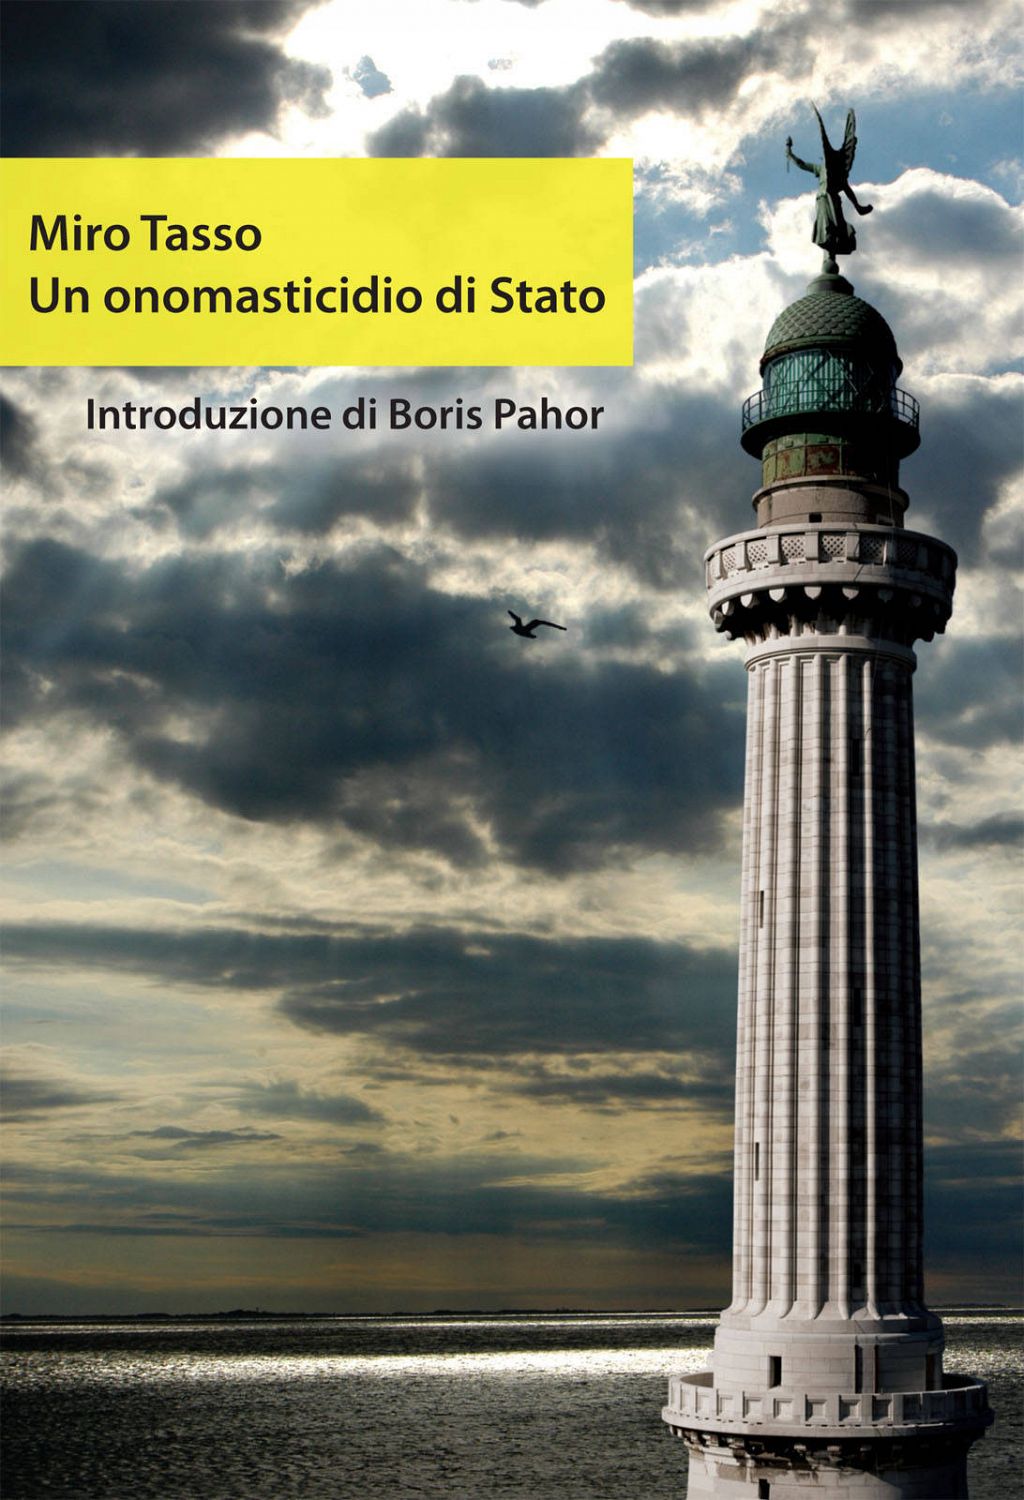 Un onomasticidio di Stato (publikacija v italijanskem jeziku)